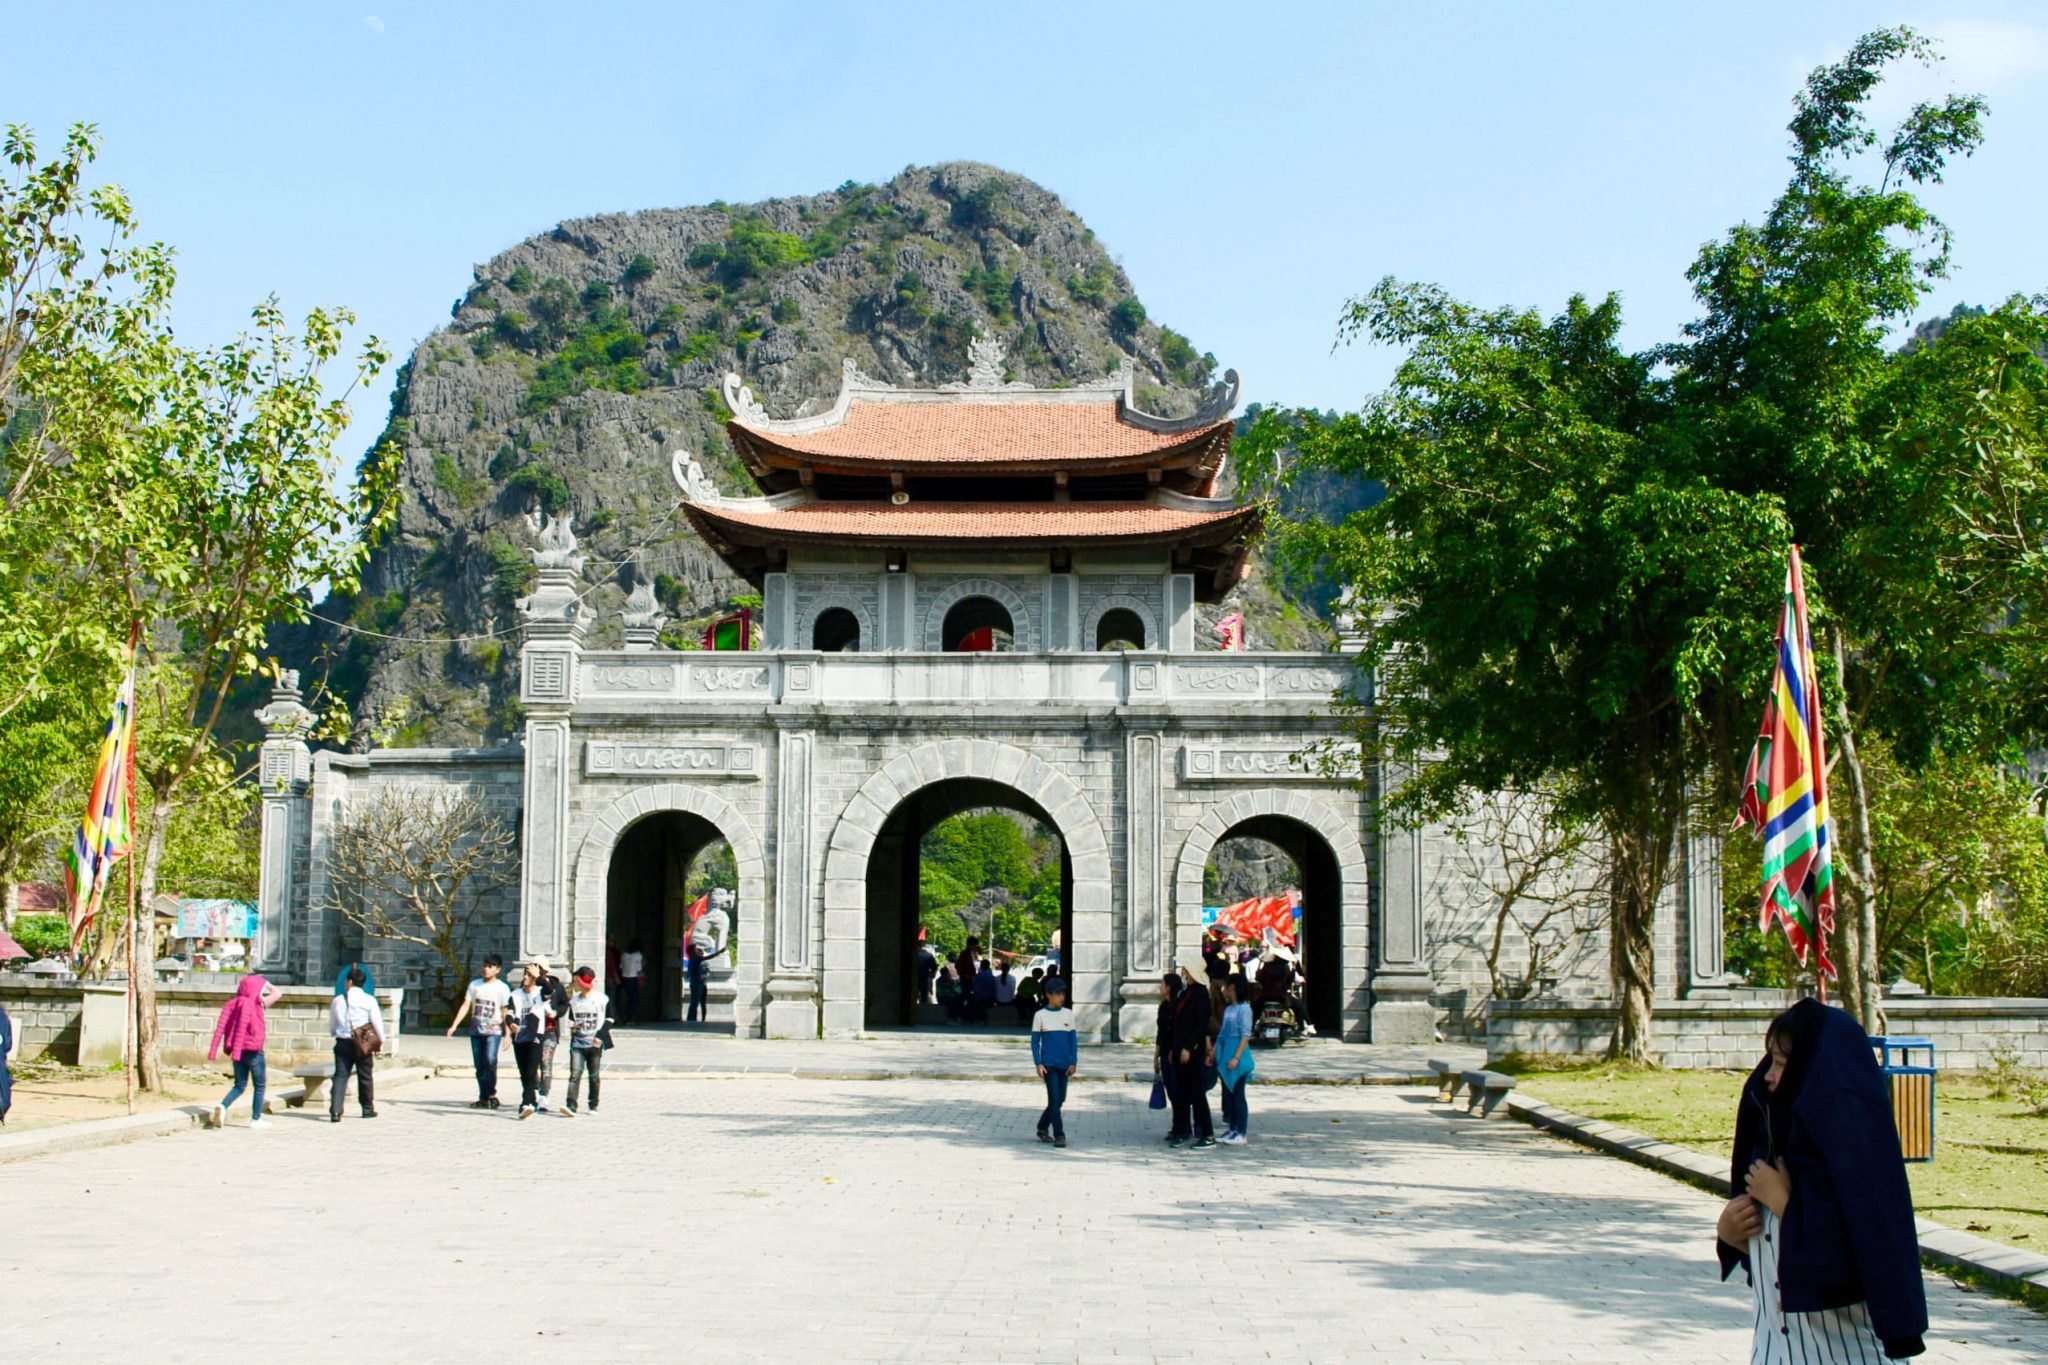 Hanoi to Ninh Binh to see Hoa Lu ancient capital